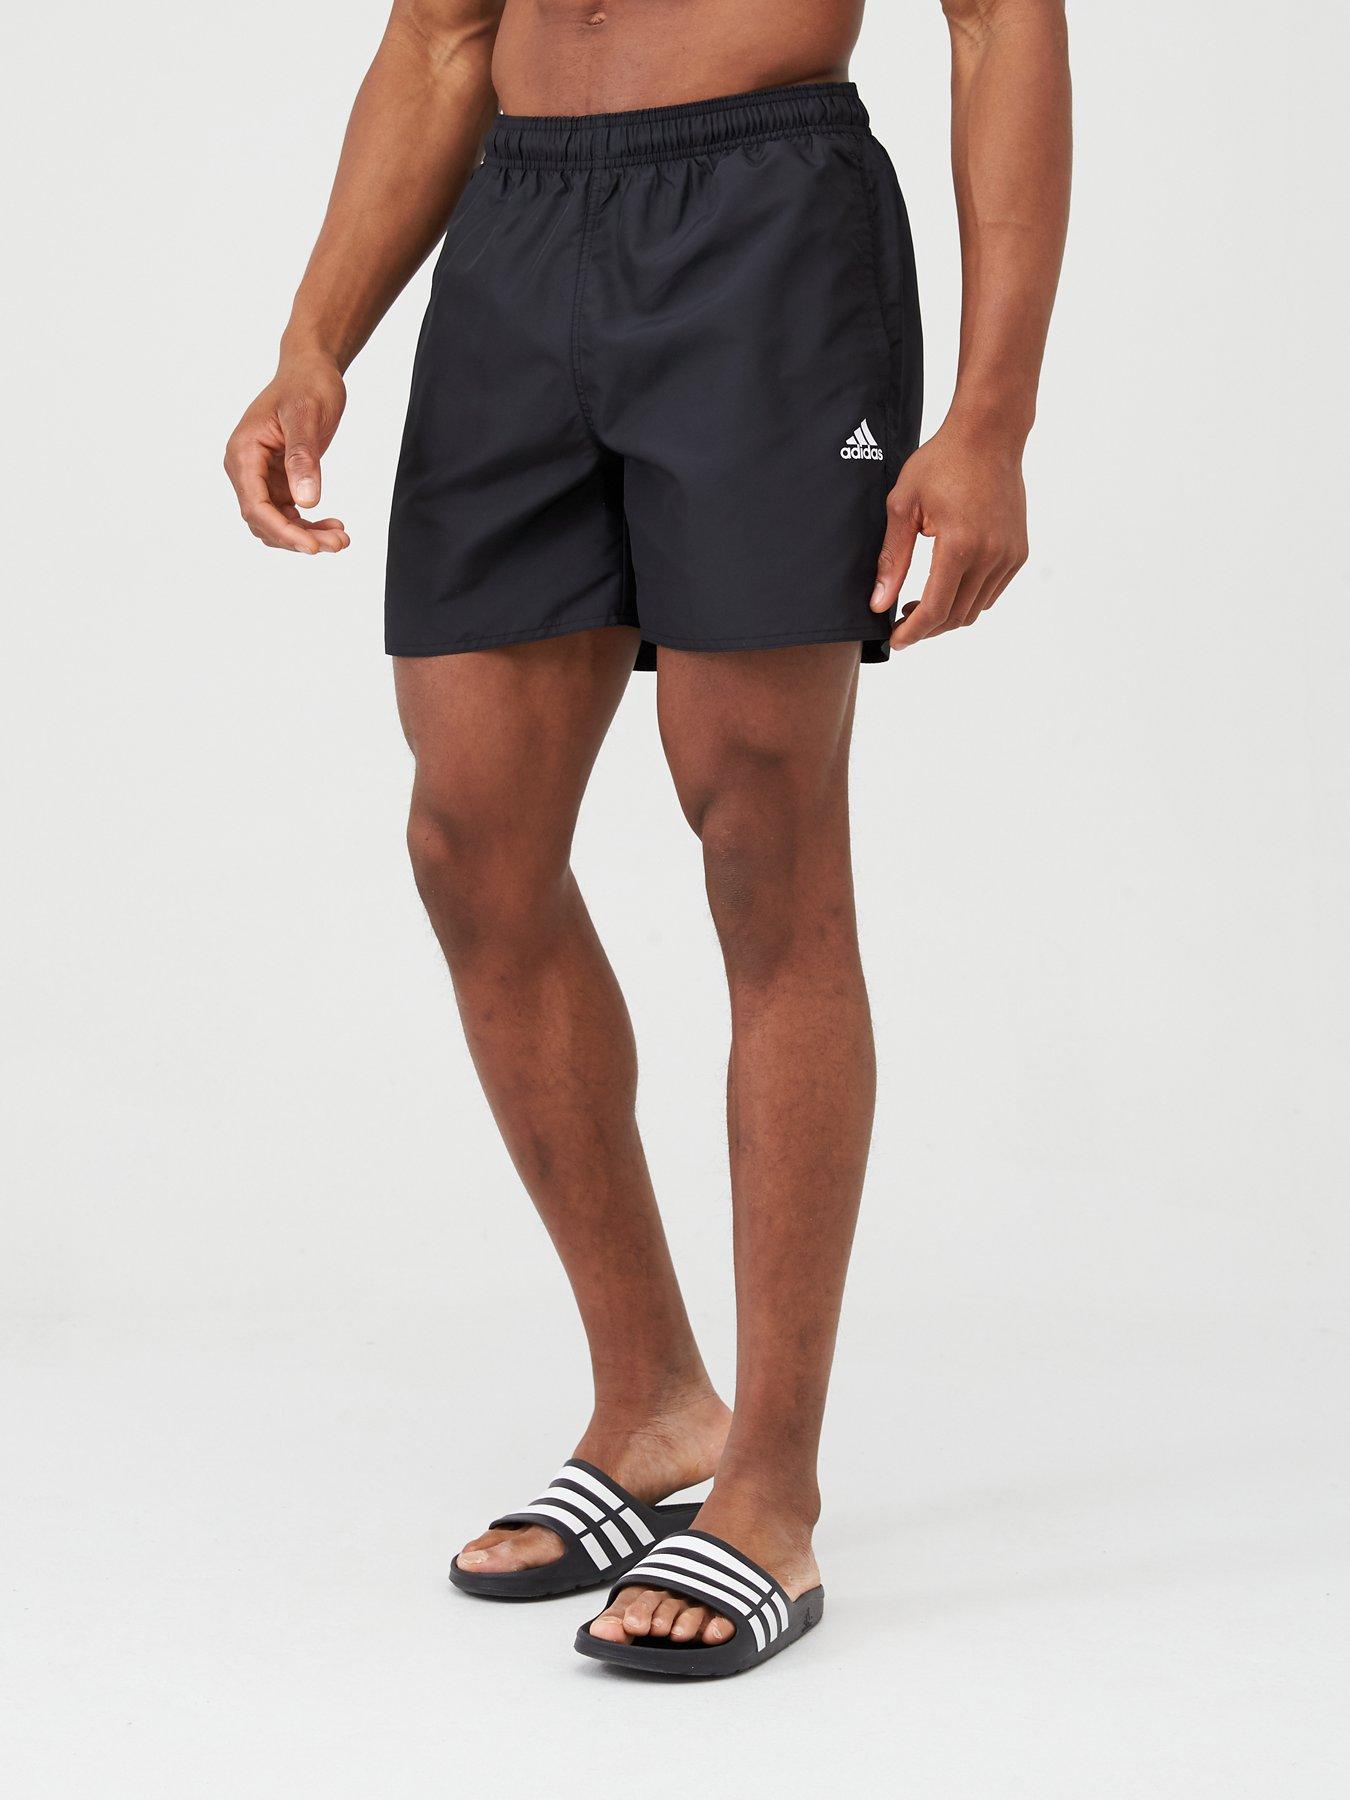 adidas solid shorts